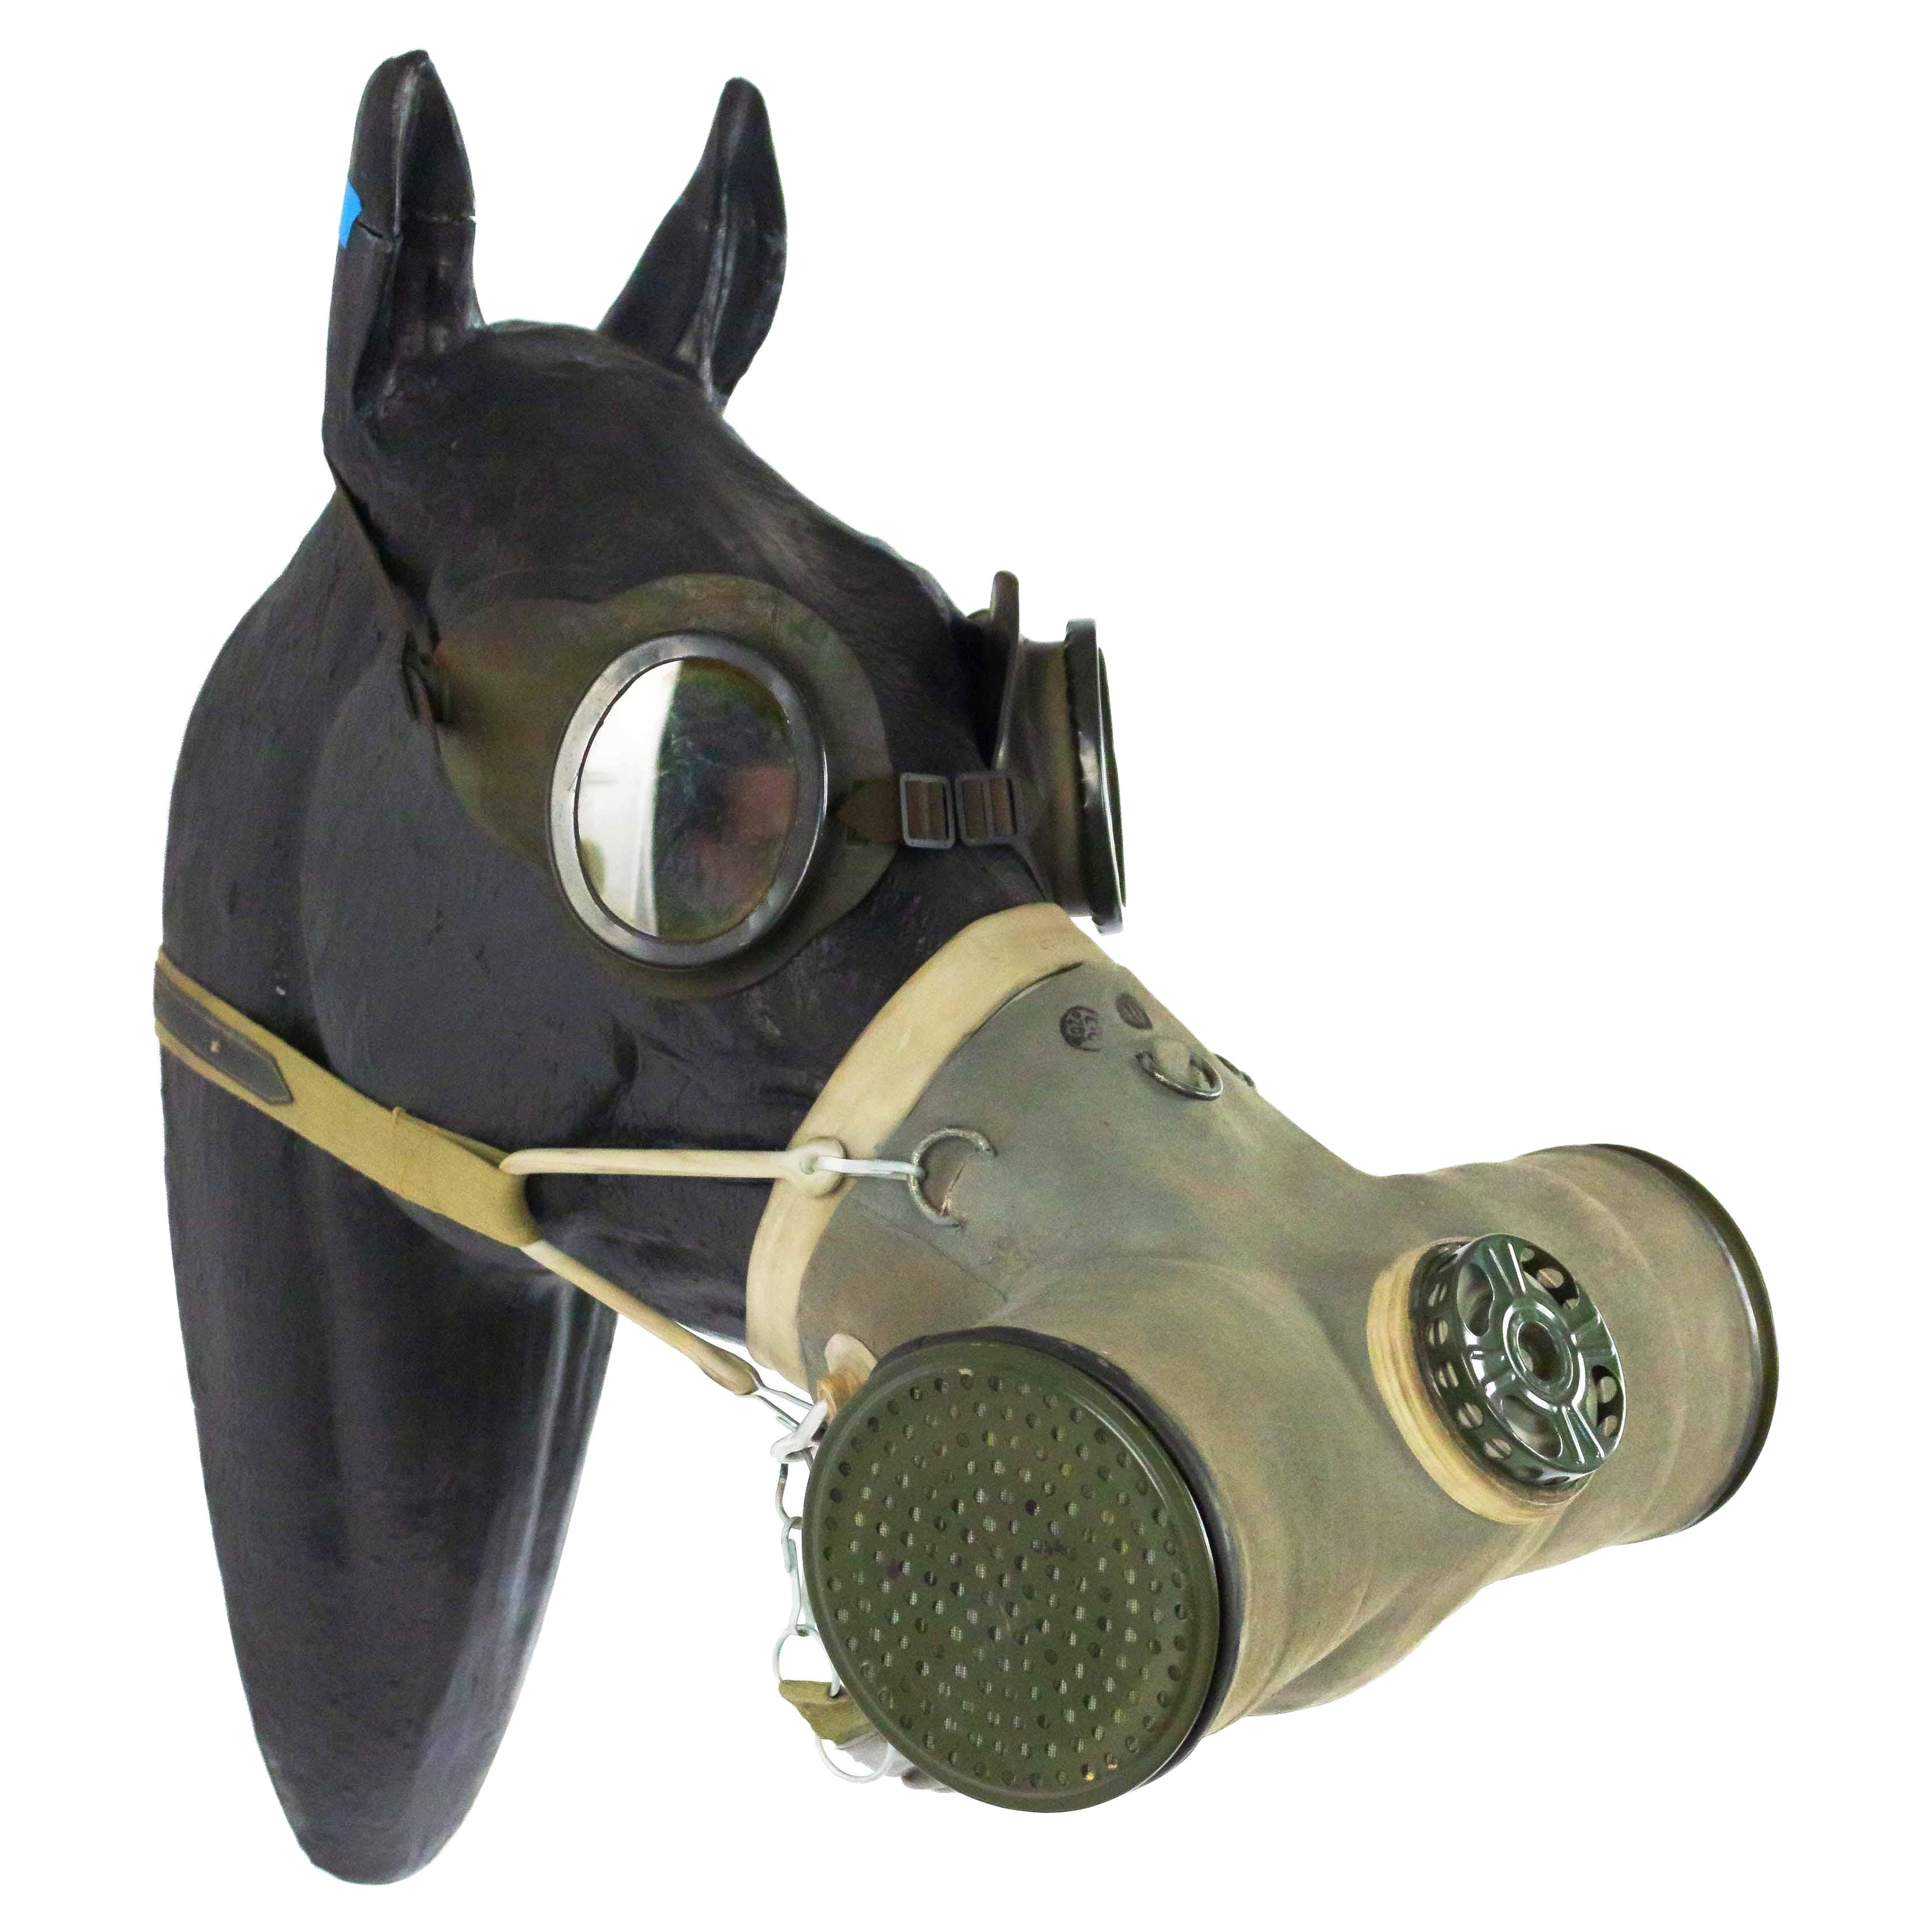 WWI Model of Horse Head Wearing Gas Mask